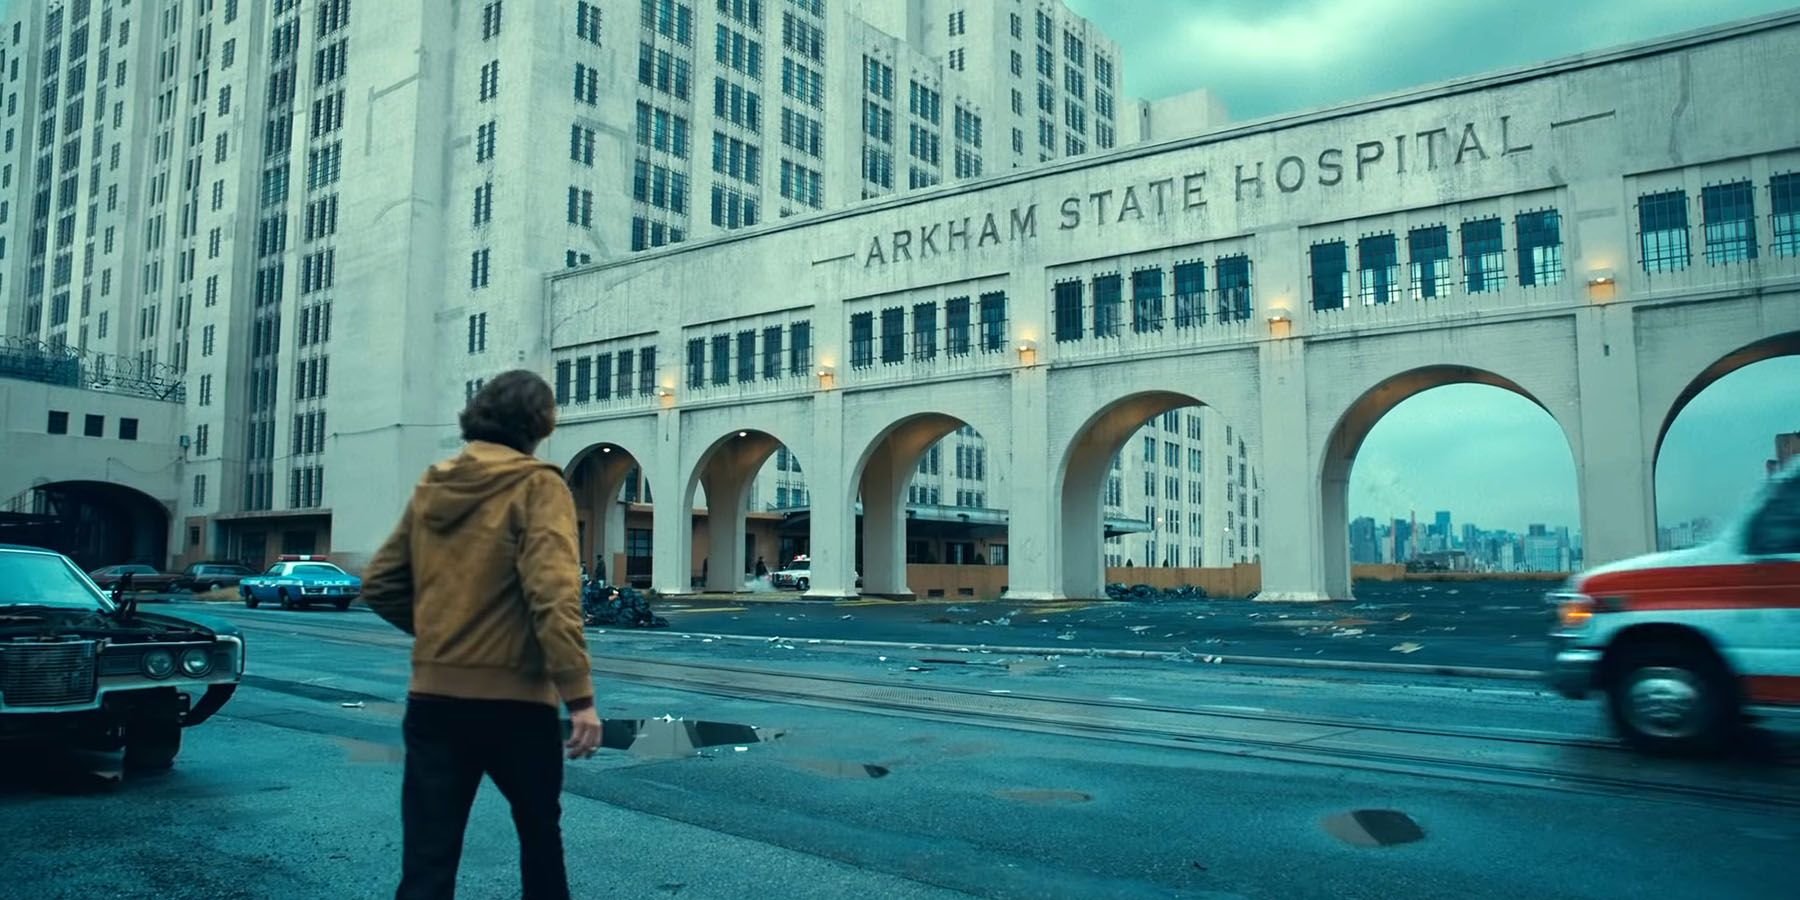 Joker Trailer - Arkham State Hospital